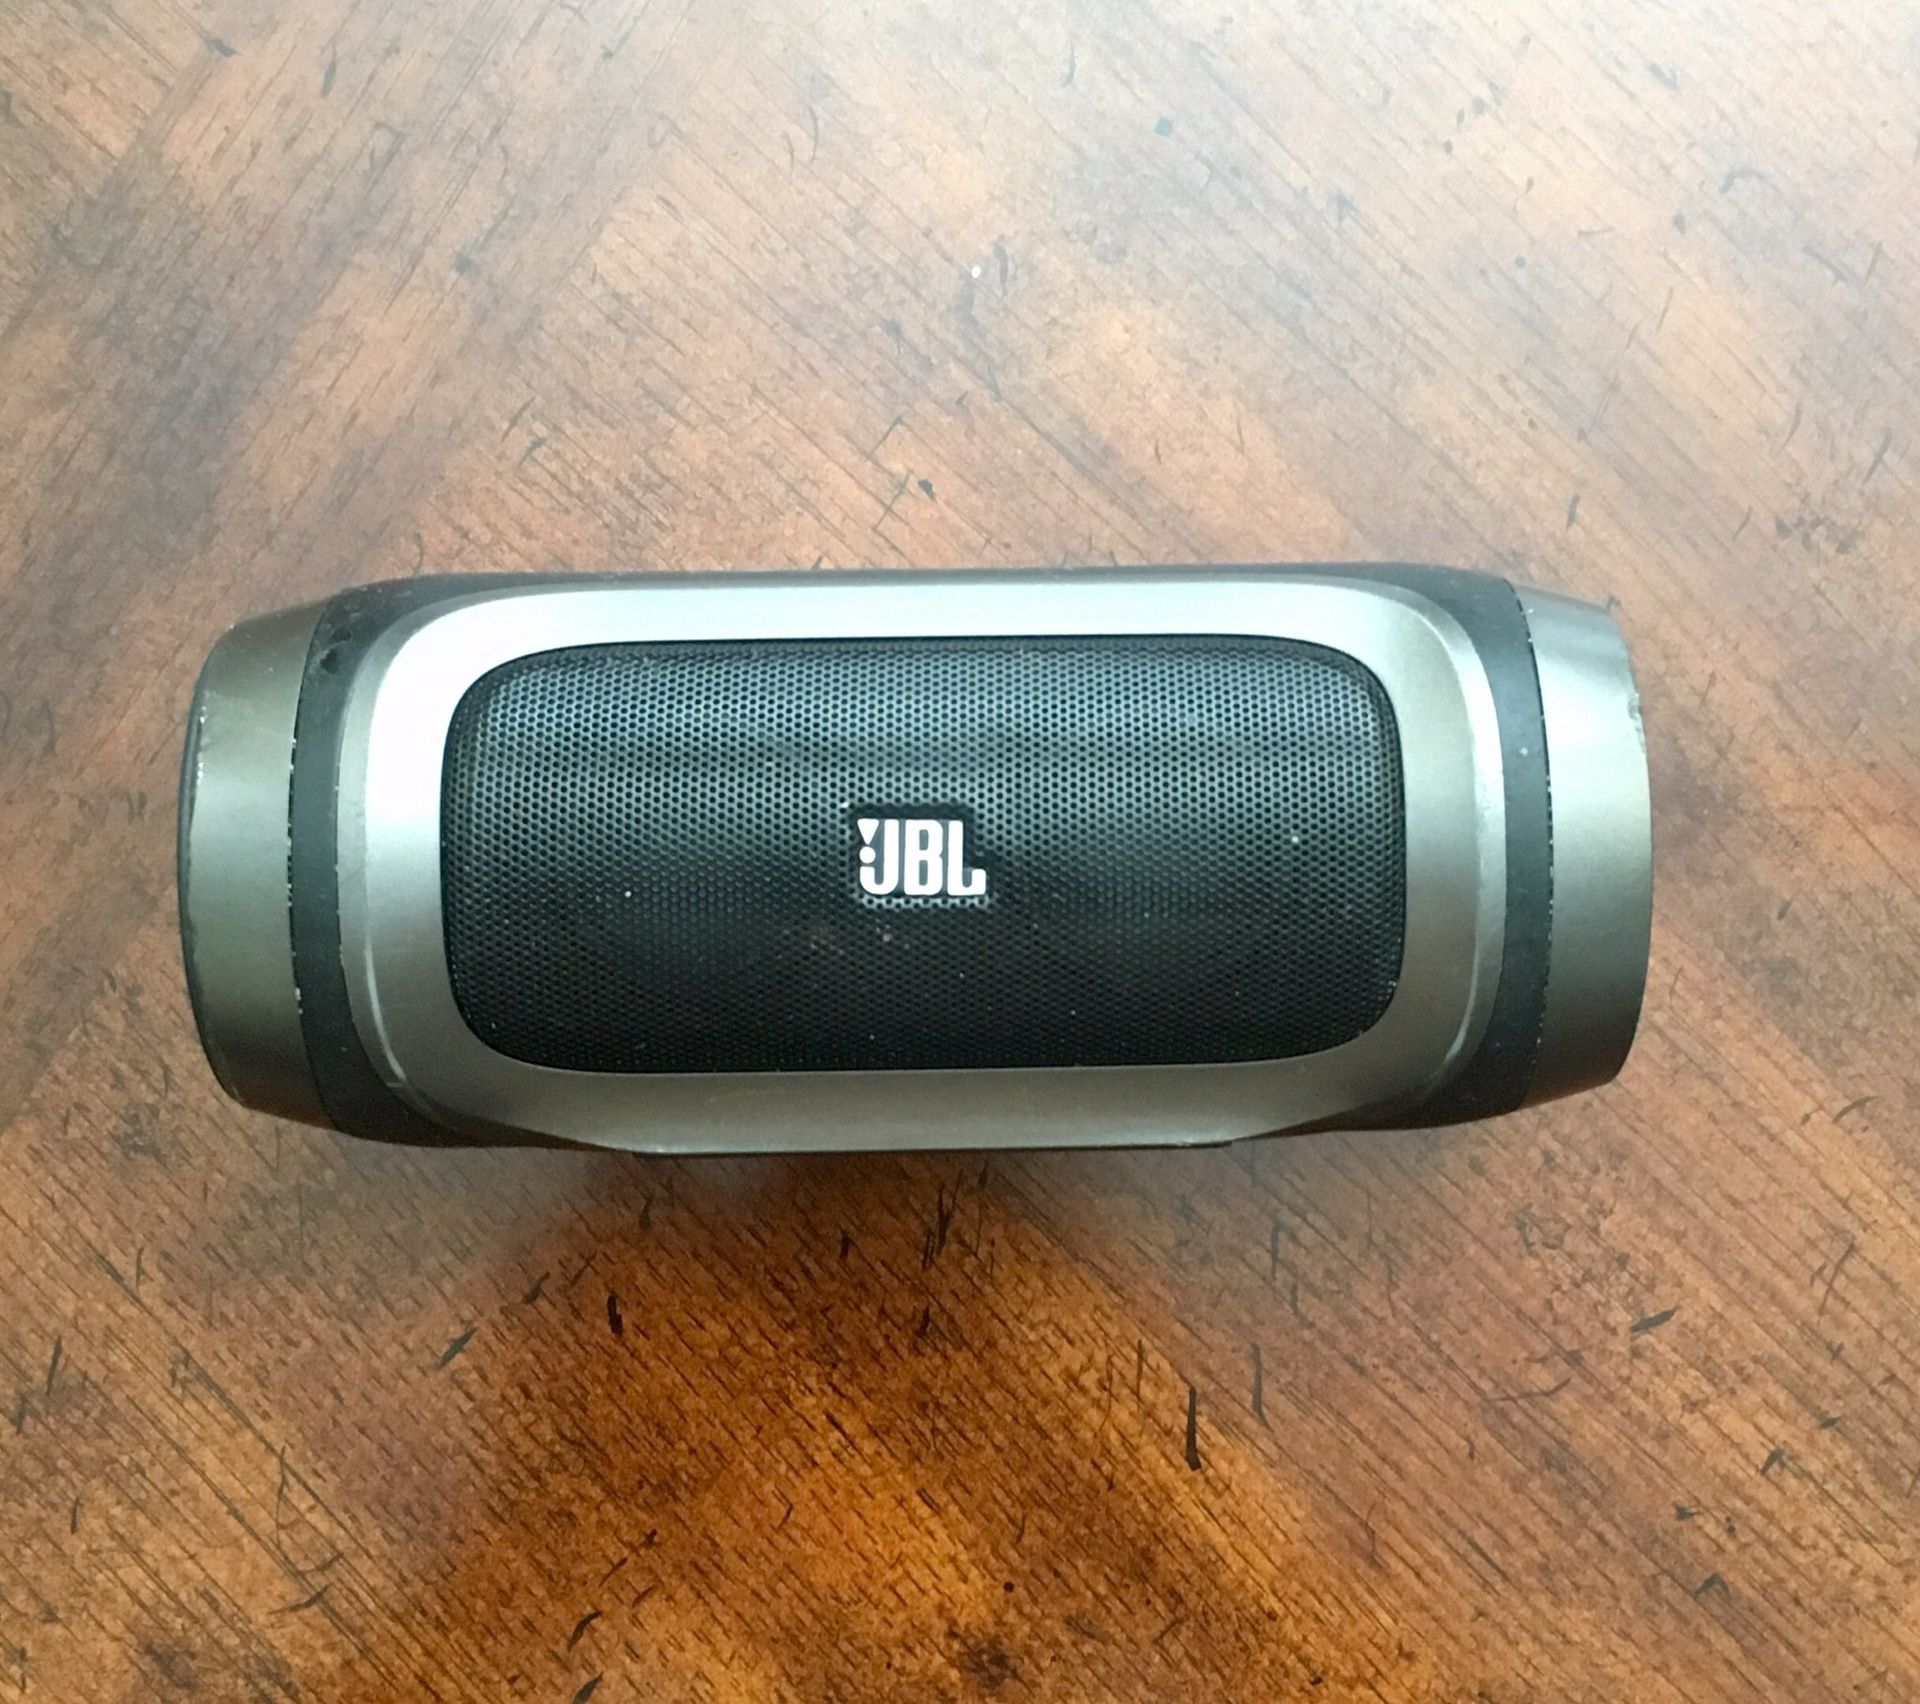 JBL Audio Bluetooth Speaker